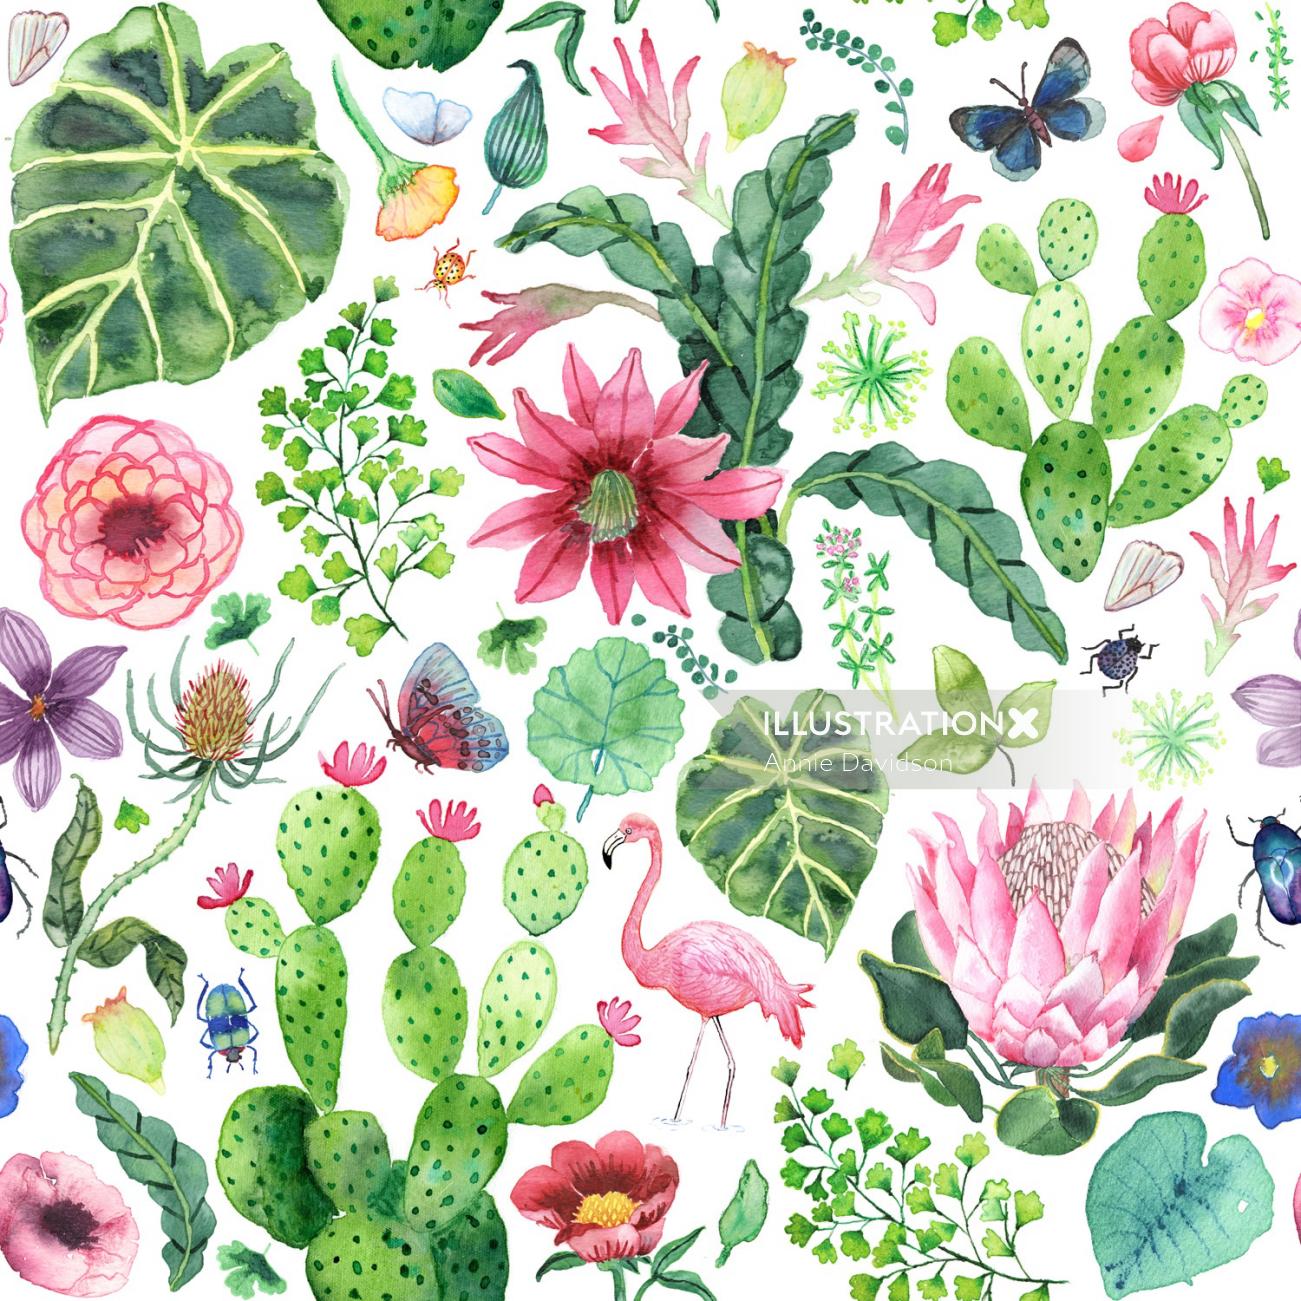 Flowers, plants & birds textile design